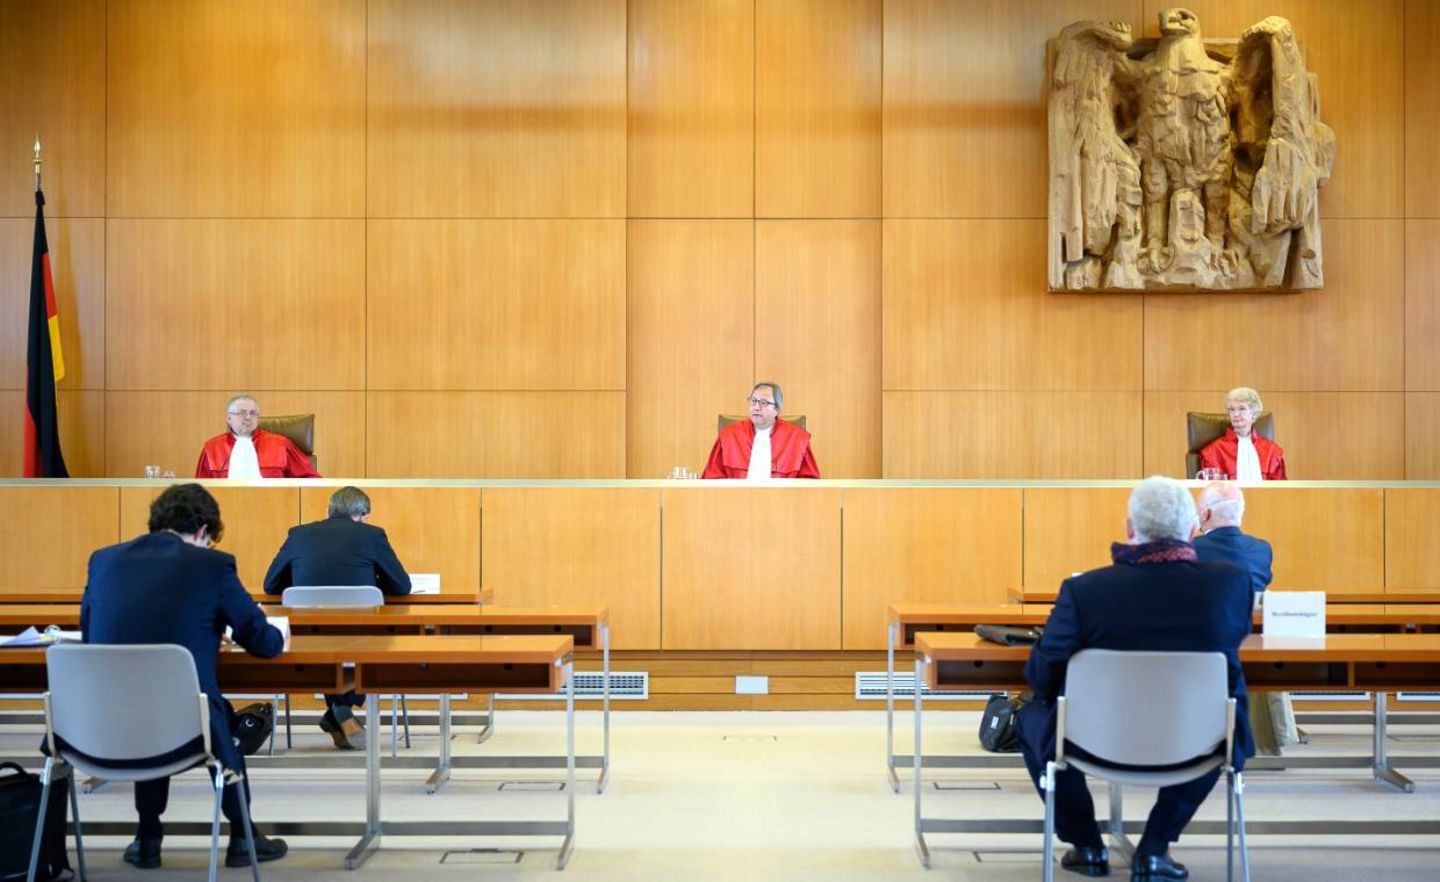 Gerichtspräsident Andreas Voßkuhle bei der Verkündung des Urteils über die Staatsanleihenkäufe der EZB